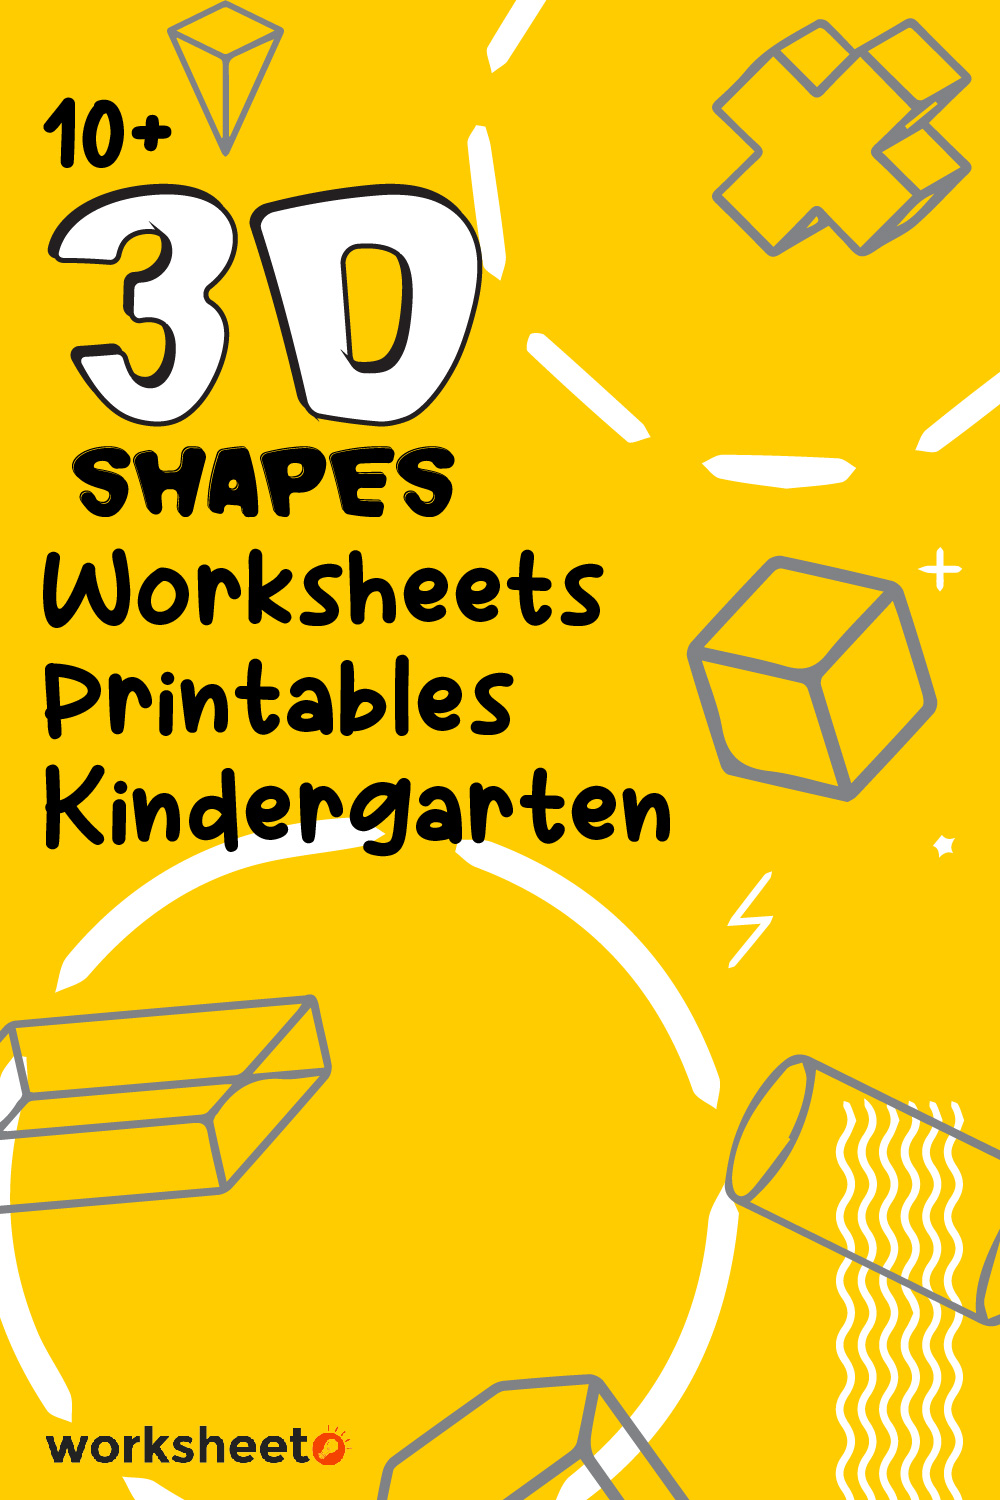 14 Images of 3D Shapes Worksheets Printables Kindergarten